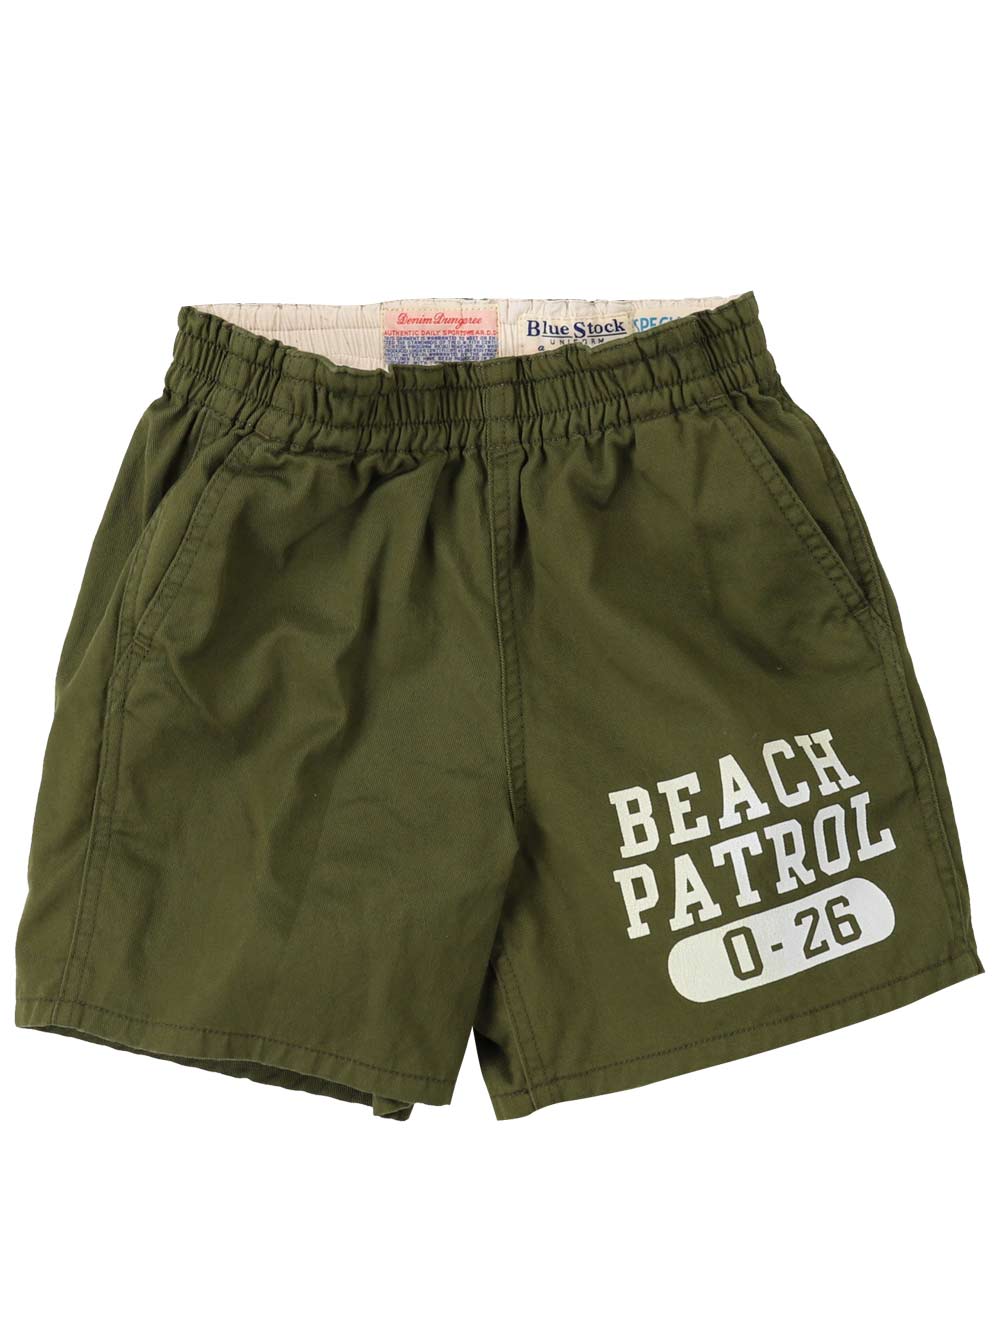 Khaki Beach Patrol Shorts